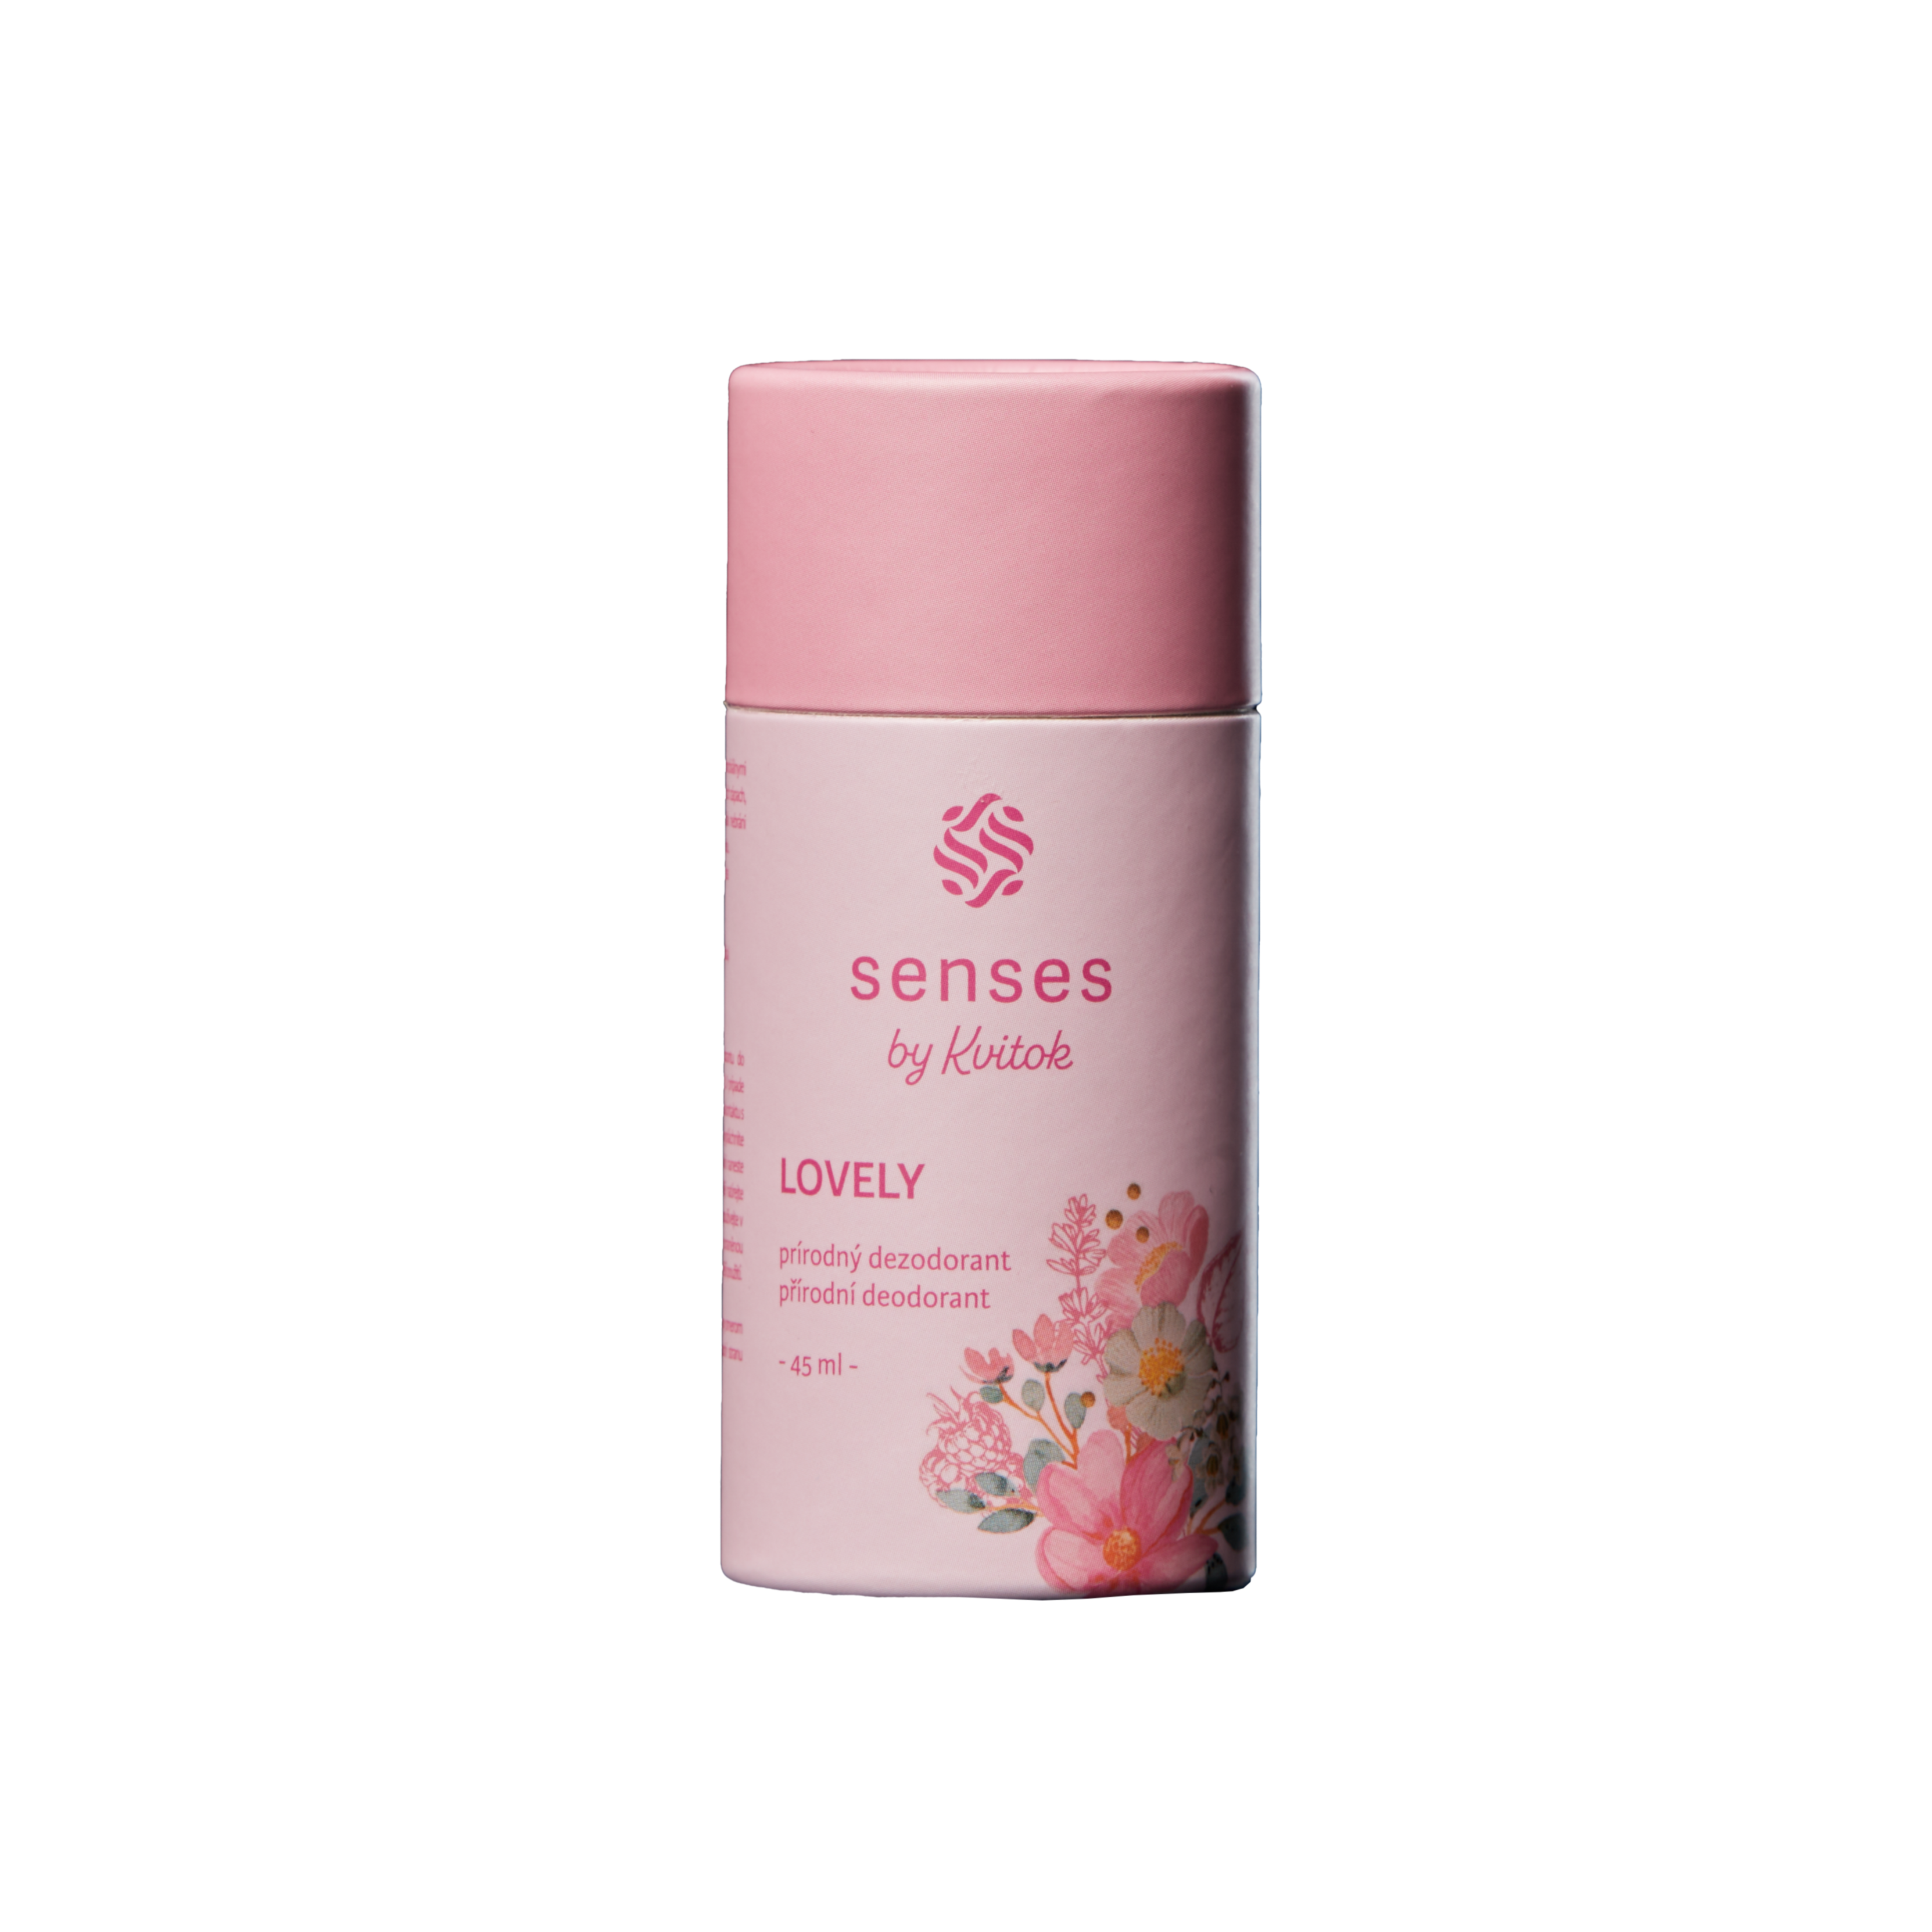 Kvitok Senses Tuhý deodorant Lovely (45 ml) - účinný až 24 hodin